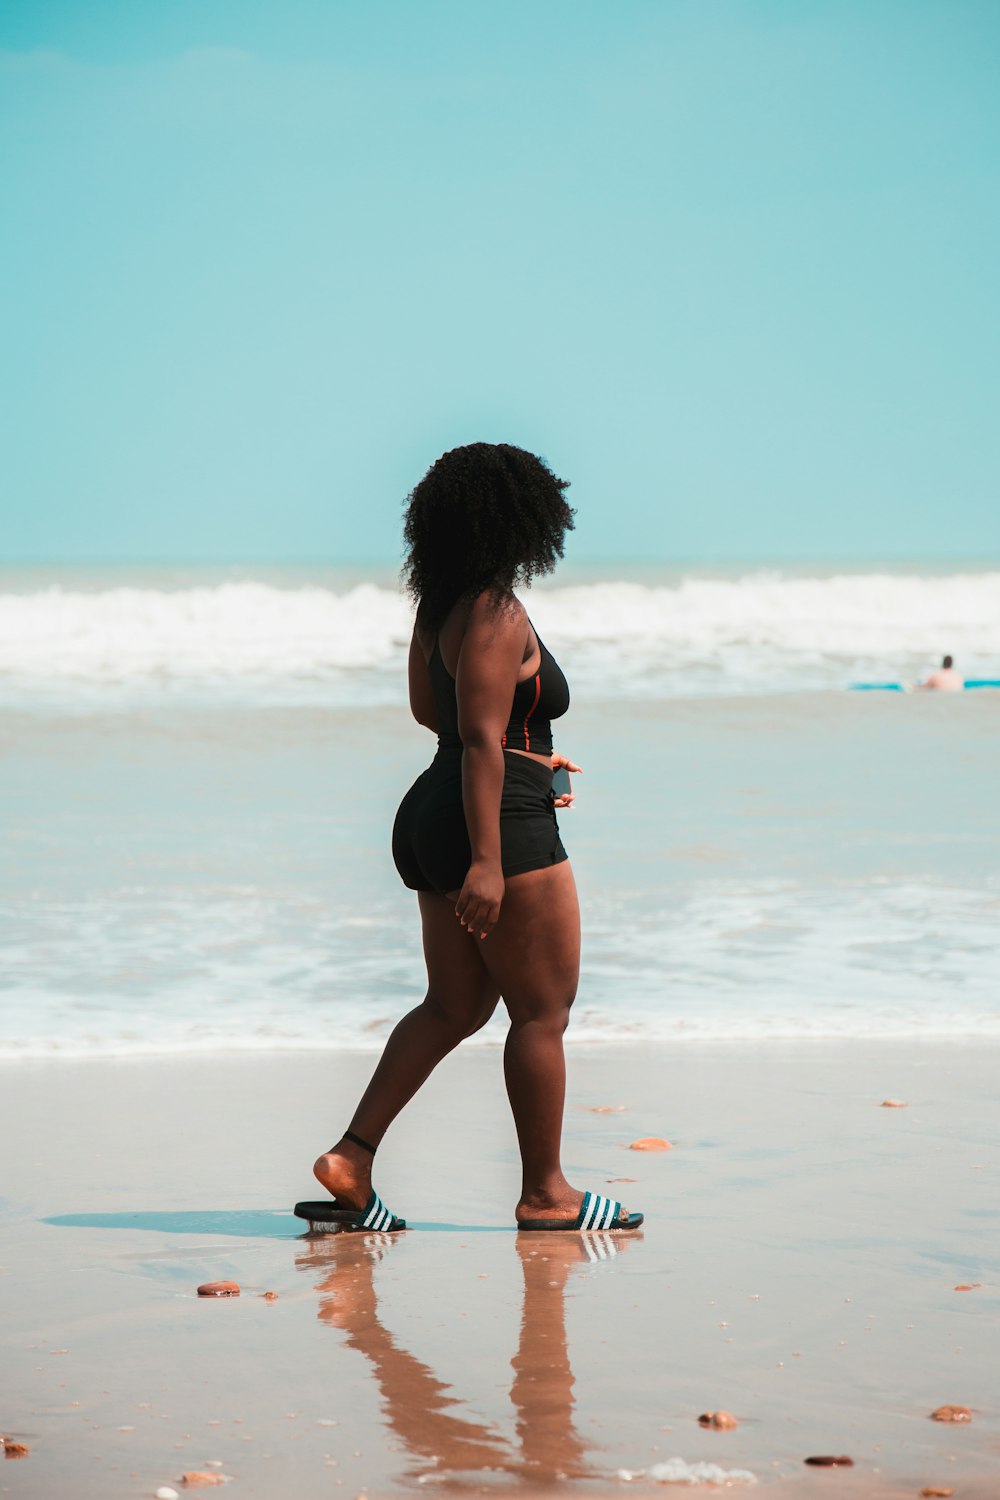 바닷가 근처를 걷고 있는 여자가 오른쪽을 바라보고 있다